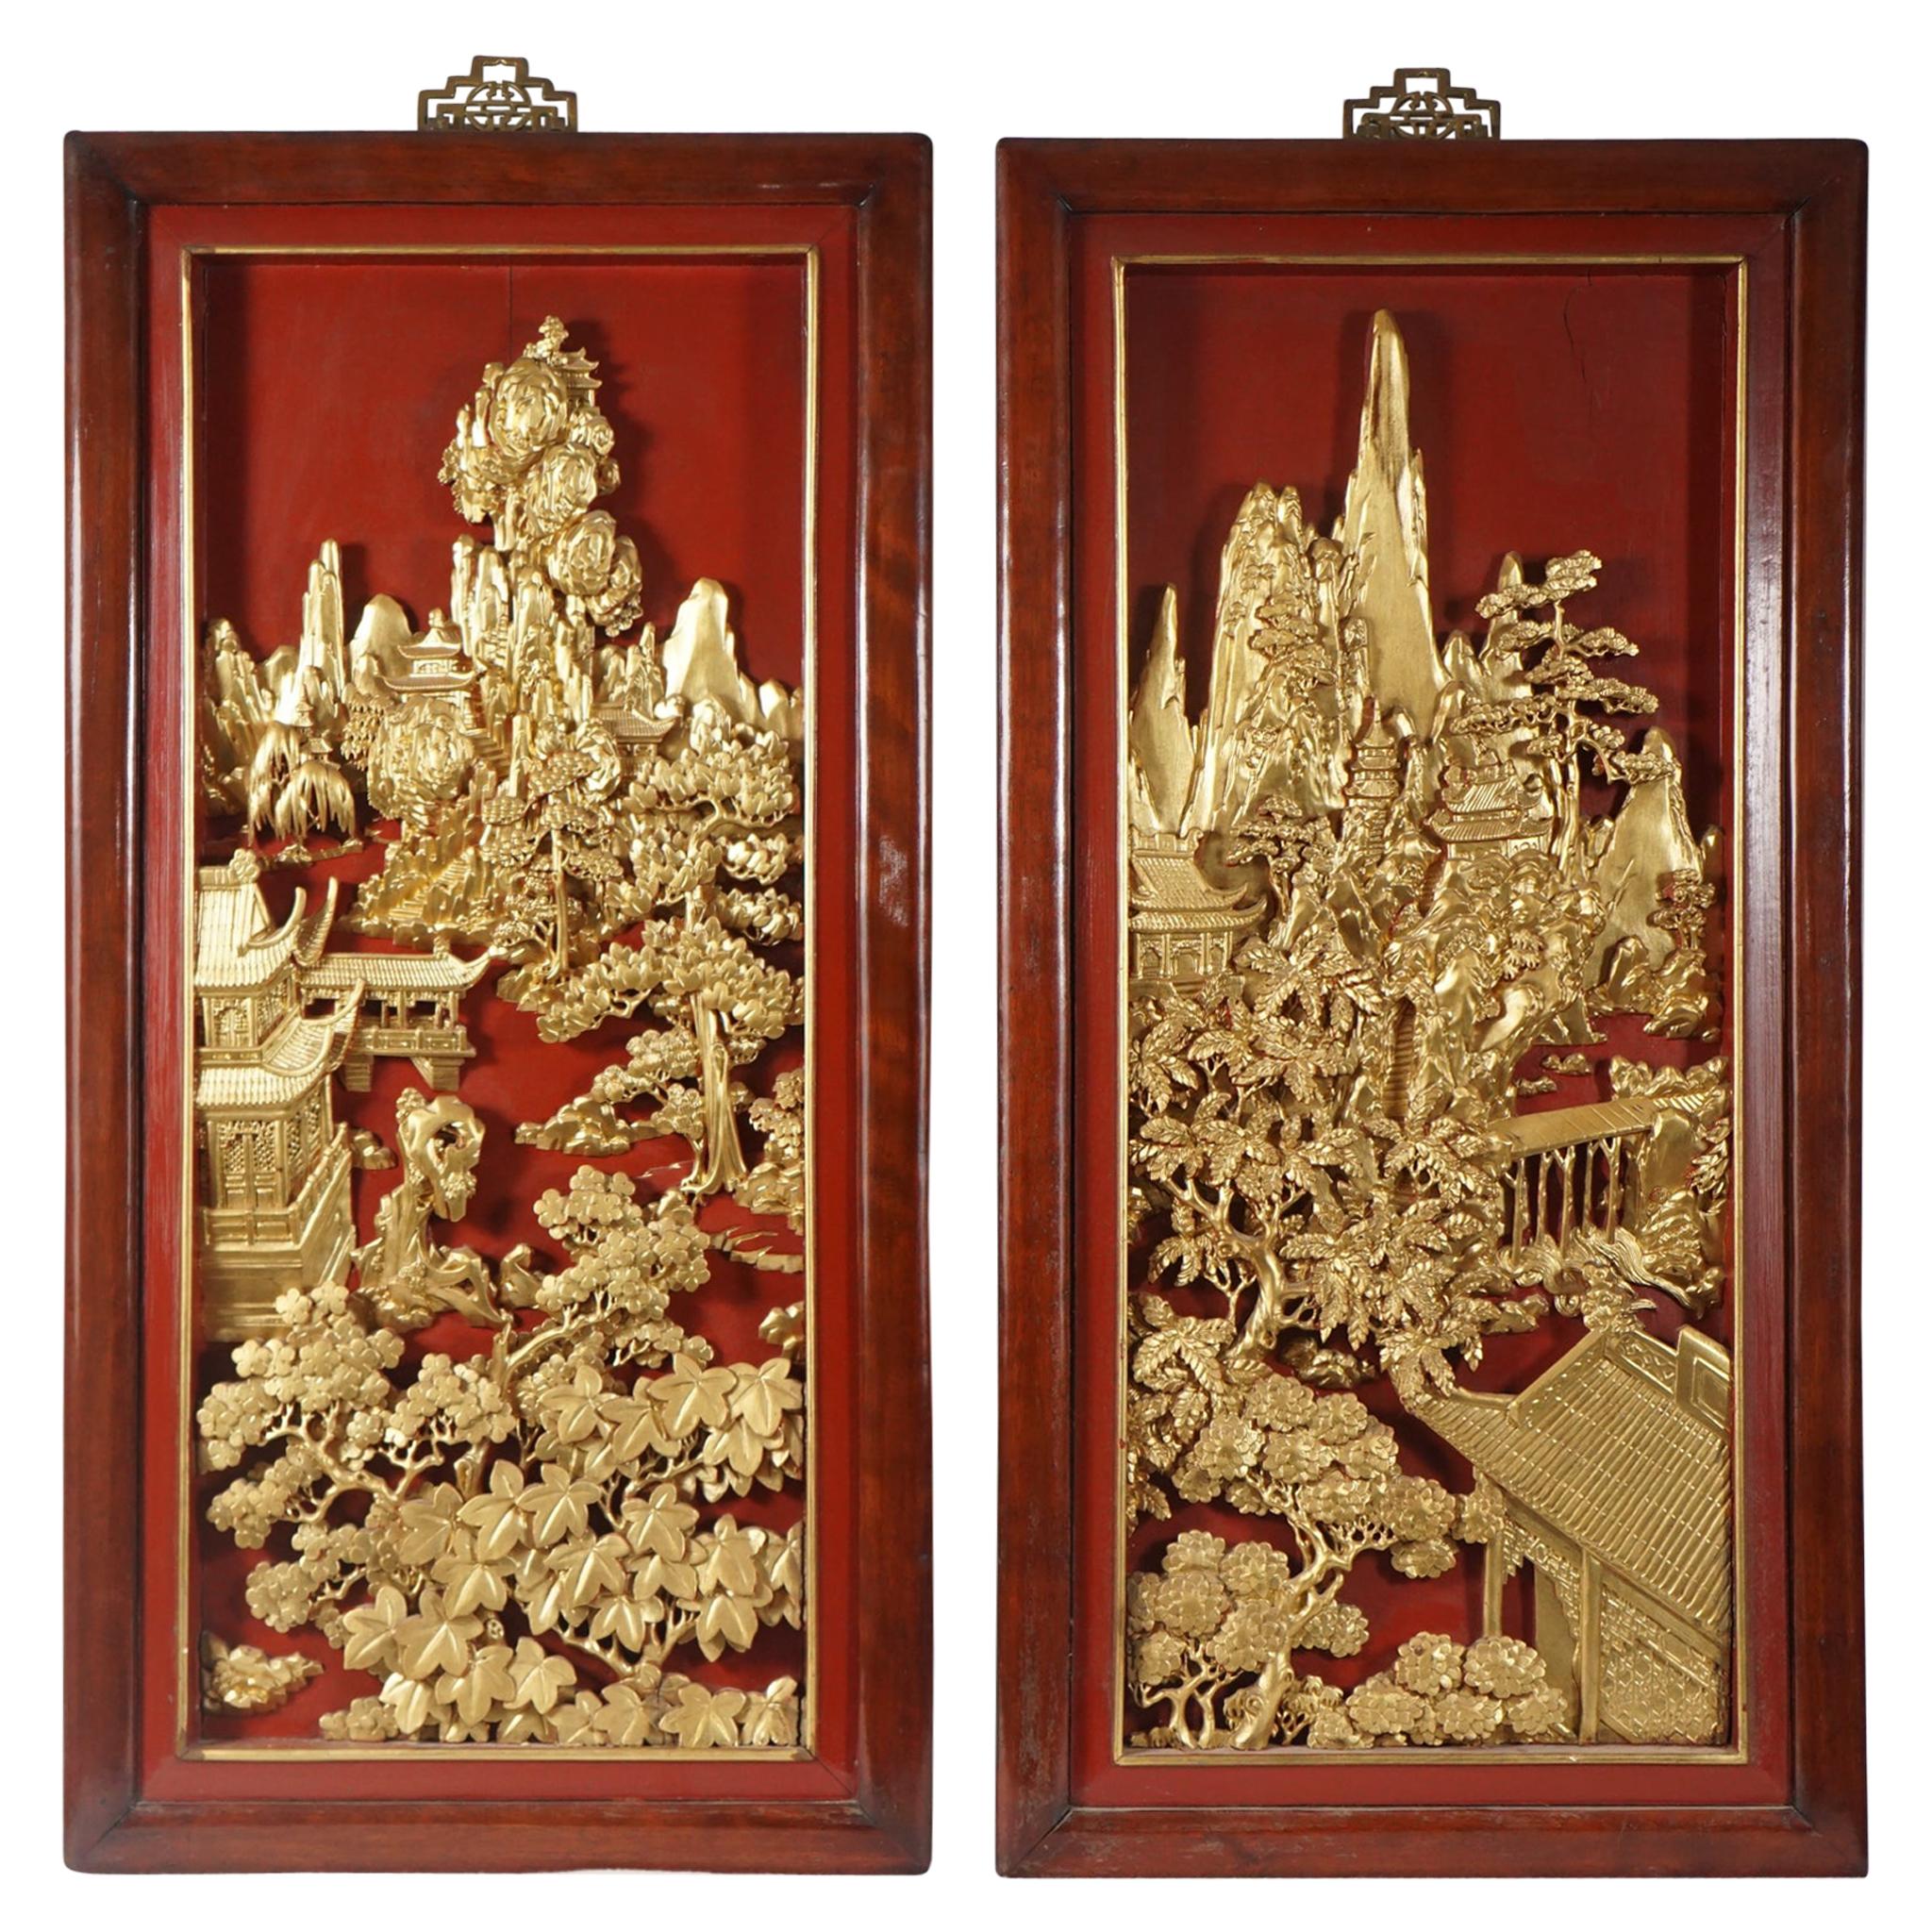 Vier chinesische geschnitzte:: lackierte und vergoldete Tafeln